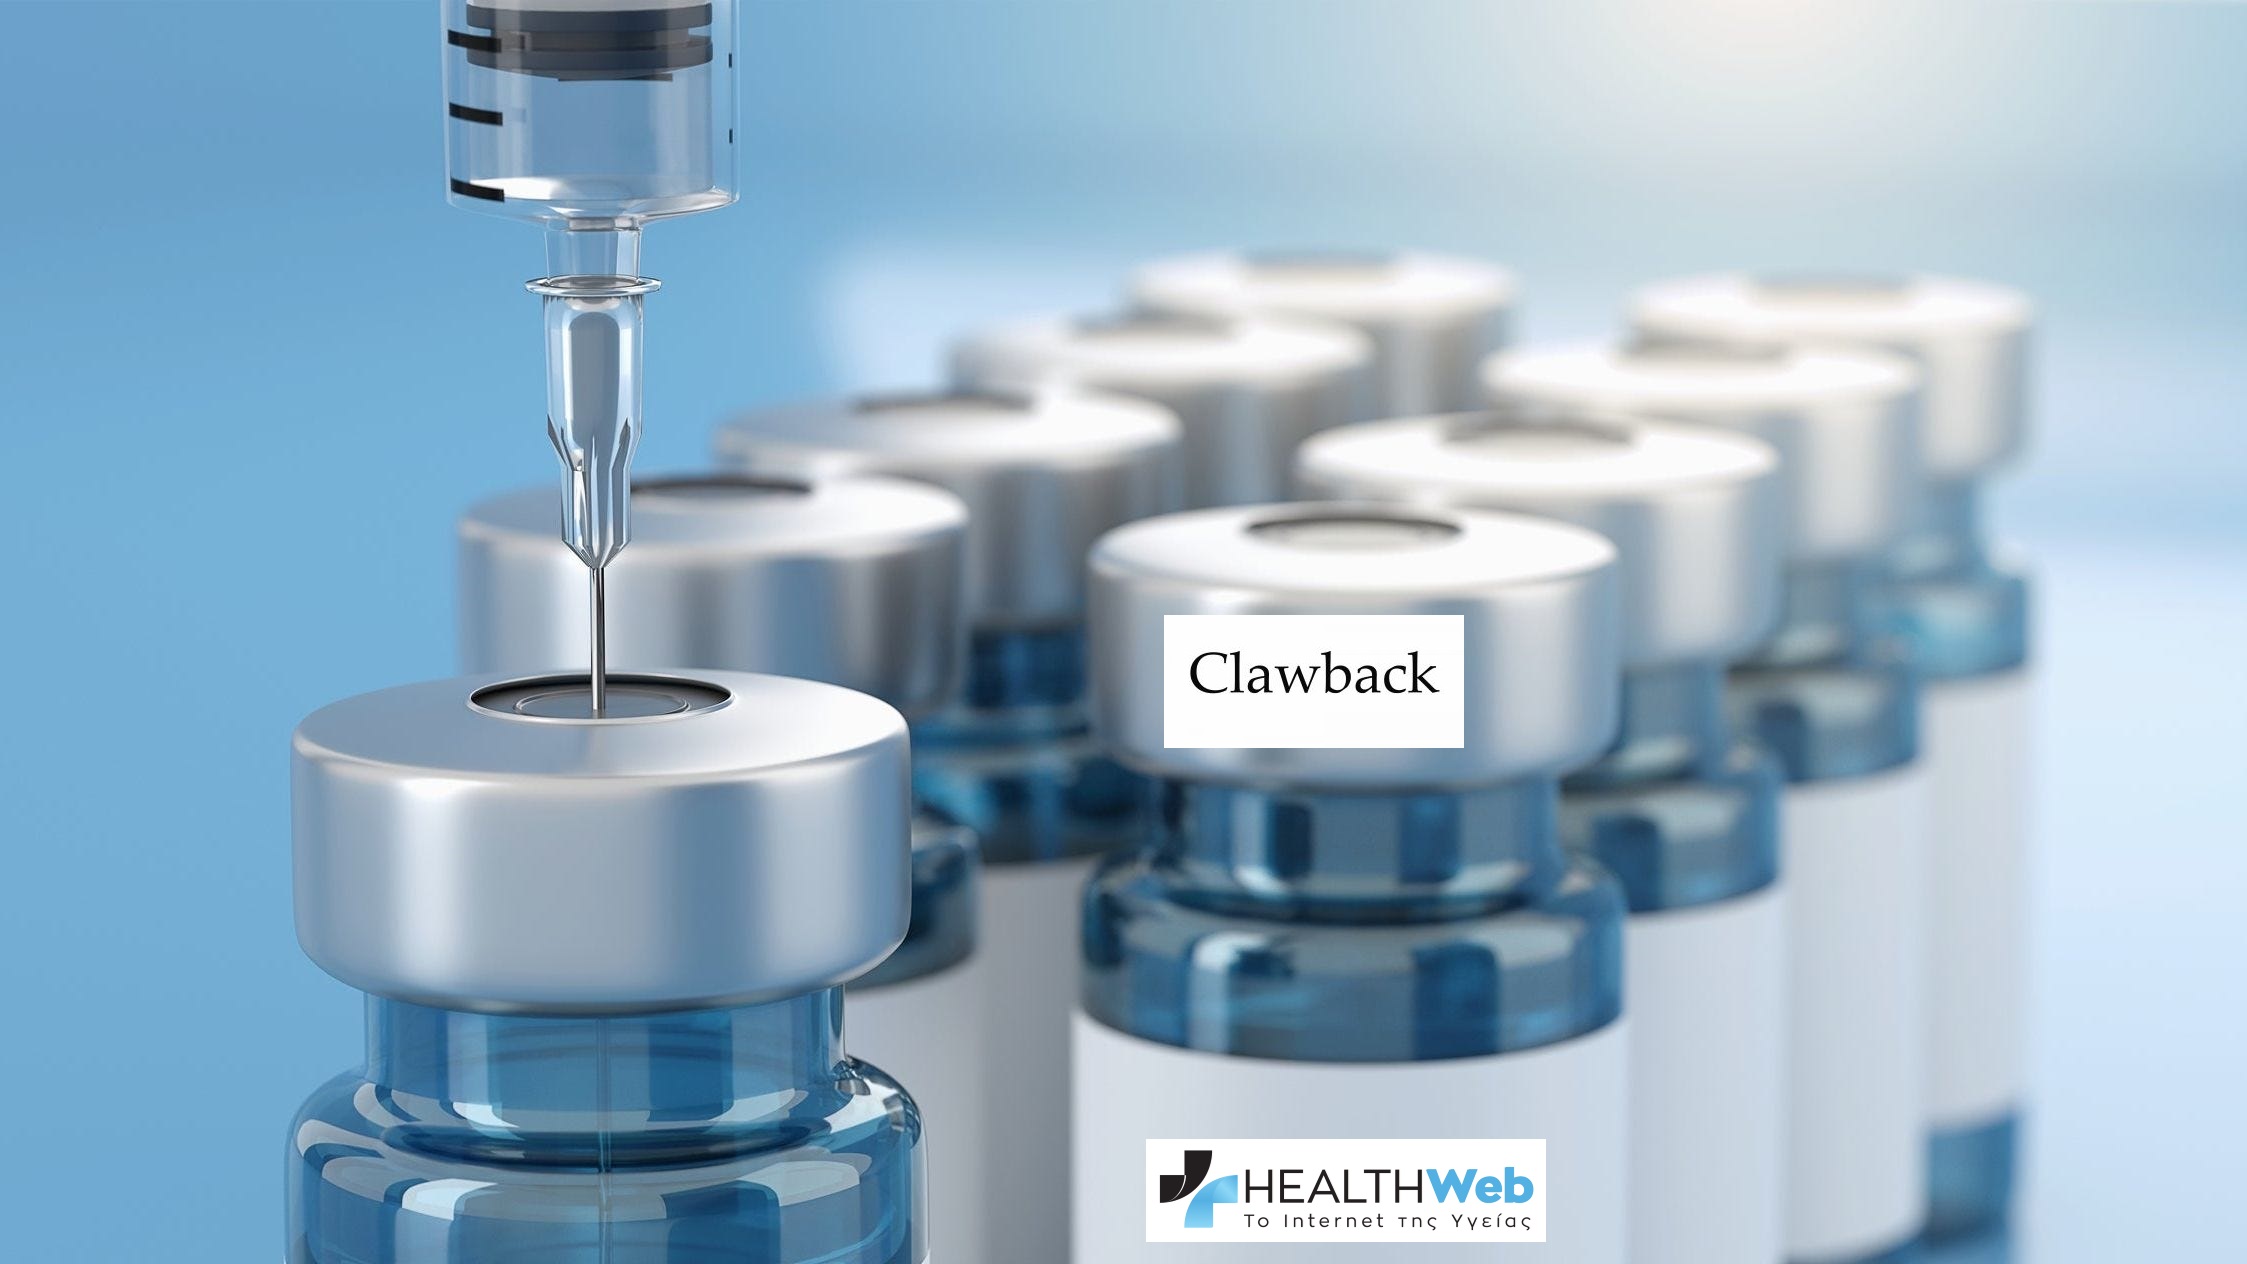 Clawback για τα εμβόλια: Τα 100 εκ.€ του ΕΟΠΥΥ απέχουν από την πραγματική δαπάνη